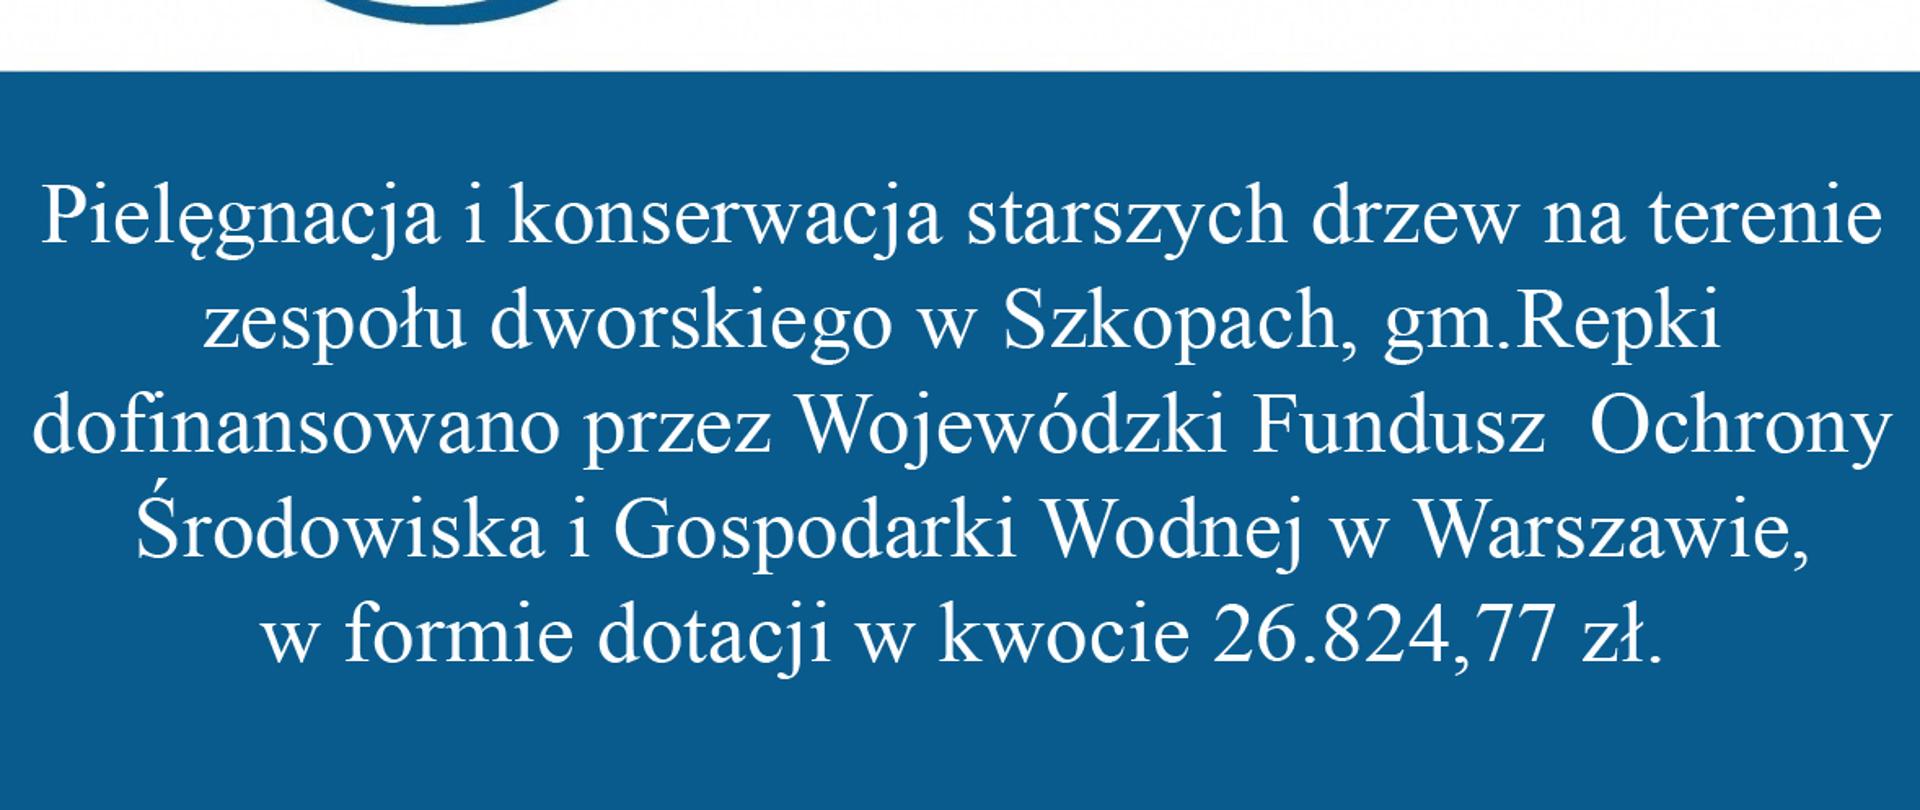 Pielęgnacja i konserwacja starszych drzew na terenie
zespołu dworskiego w Szkopach, gm.Repki
dofinansowano przez Wojewódzki Fundusz Ochrony
Środowiska i Gospodarki Wodnej w Warszawie,
w formie dotacji w kwocie 26.824,77 zł. 